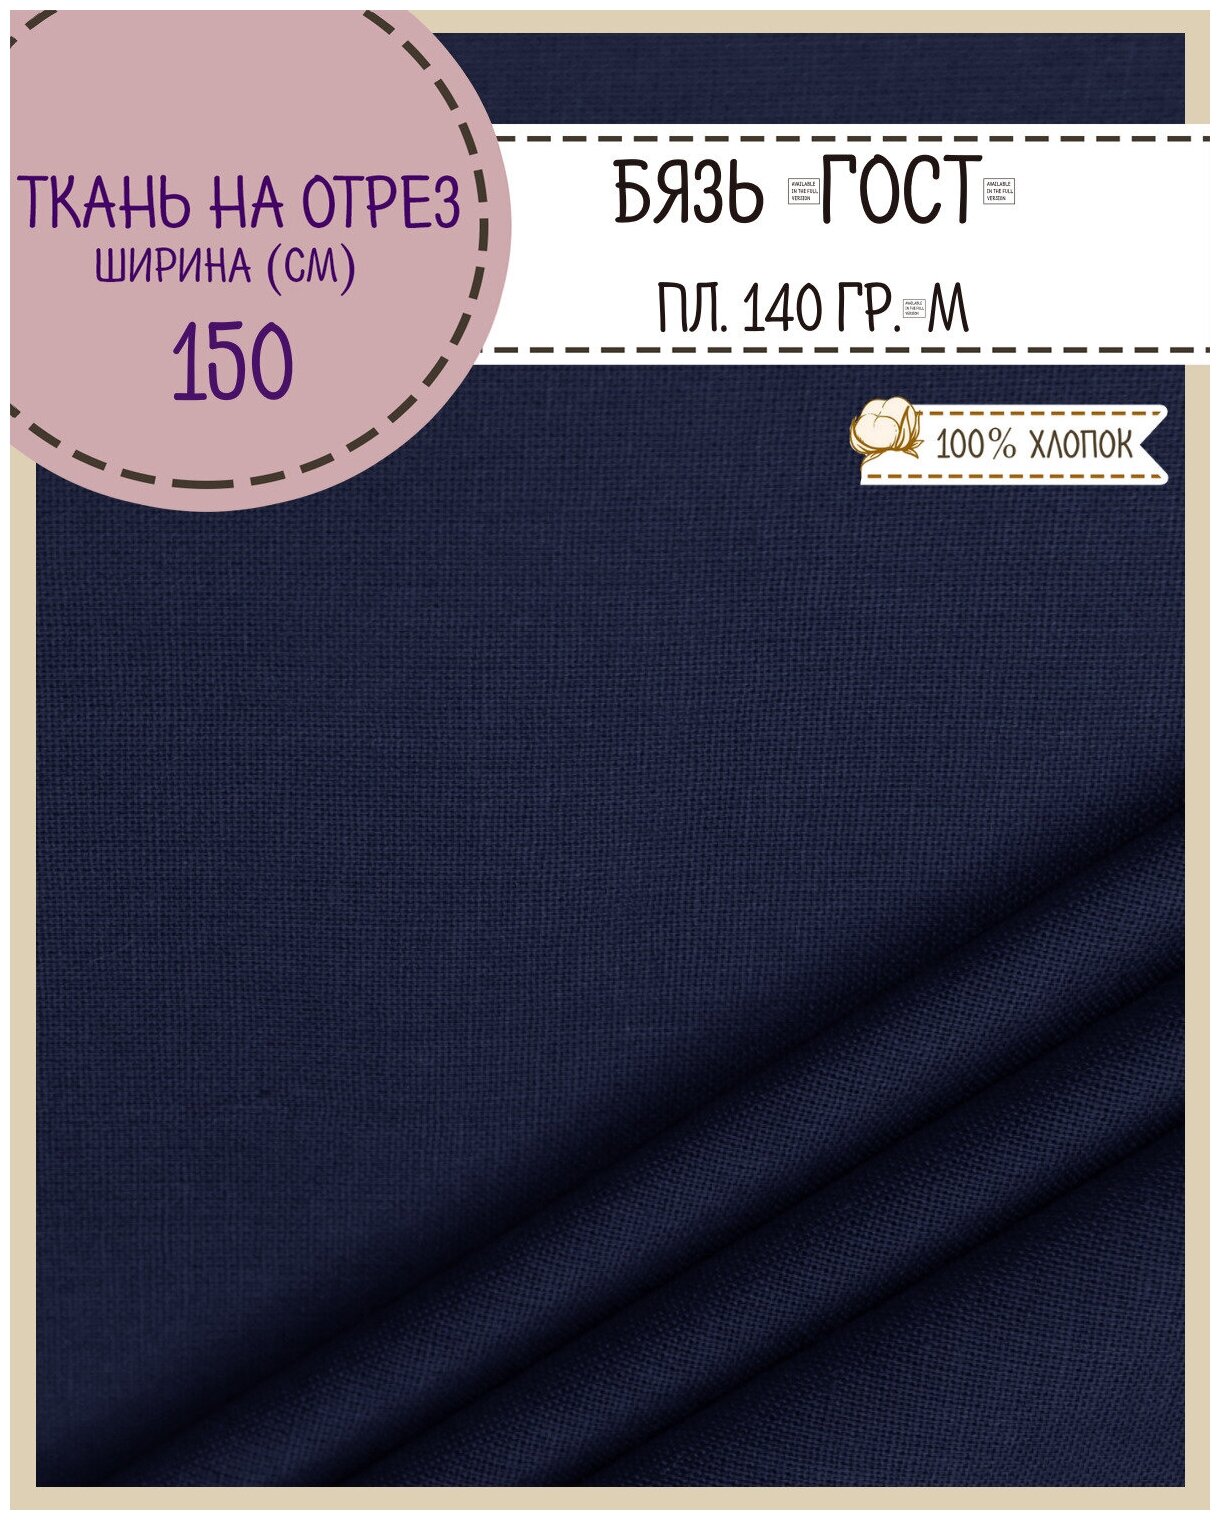 Ткань Бязь ГОСТ однотонная, цв. т. синий, 100% хлопок, пл. 140 г/м2, ш-150 см, на отрез, цена за пог. метр